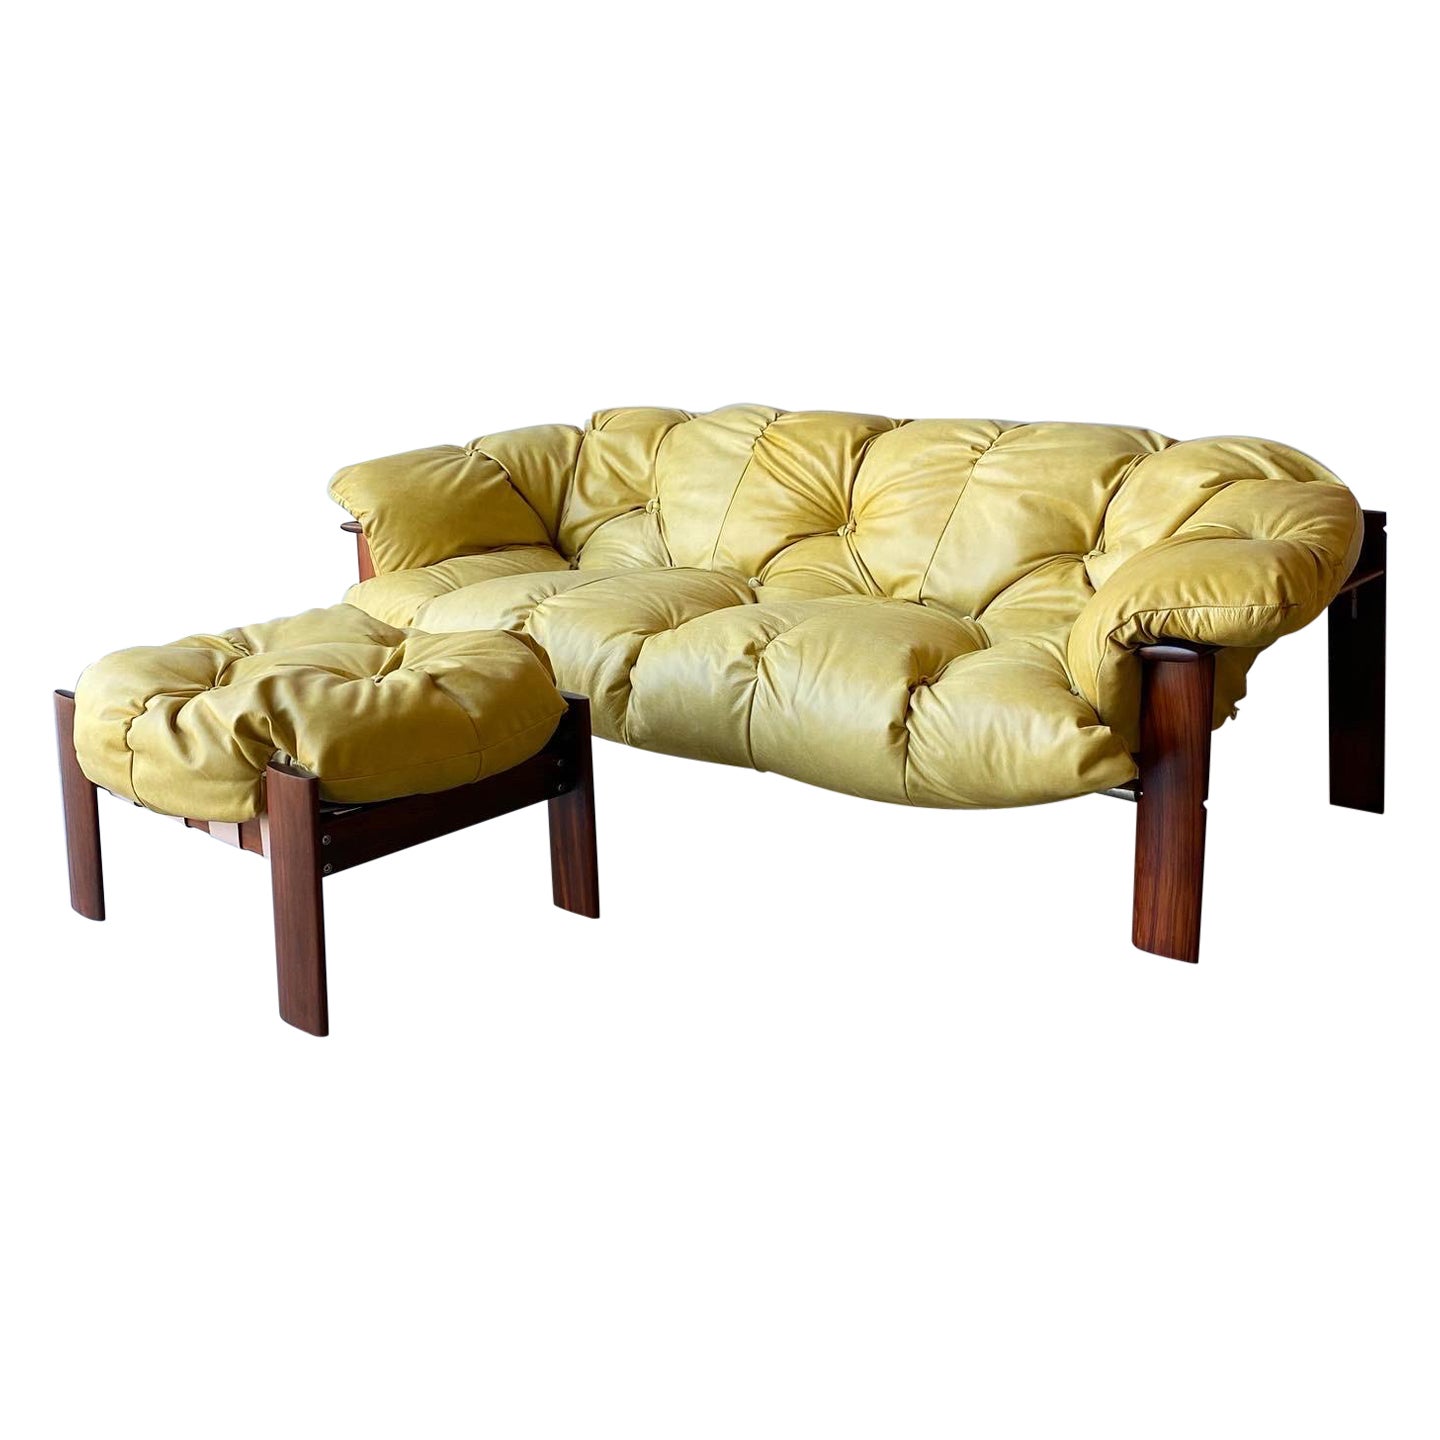 Percival Lafer Brazilian Modern Sofa and Ottoman For Sale